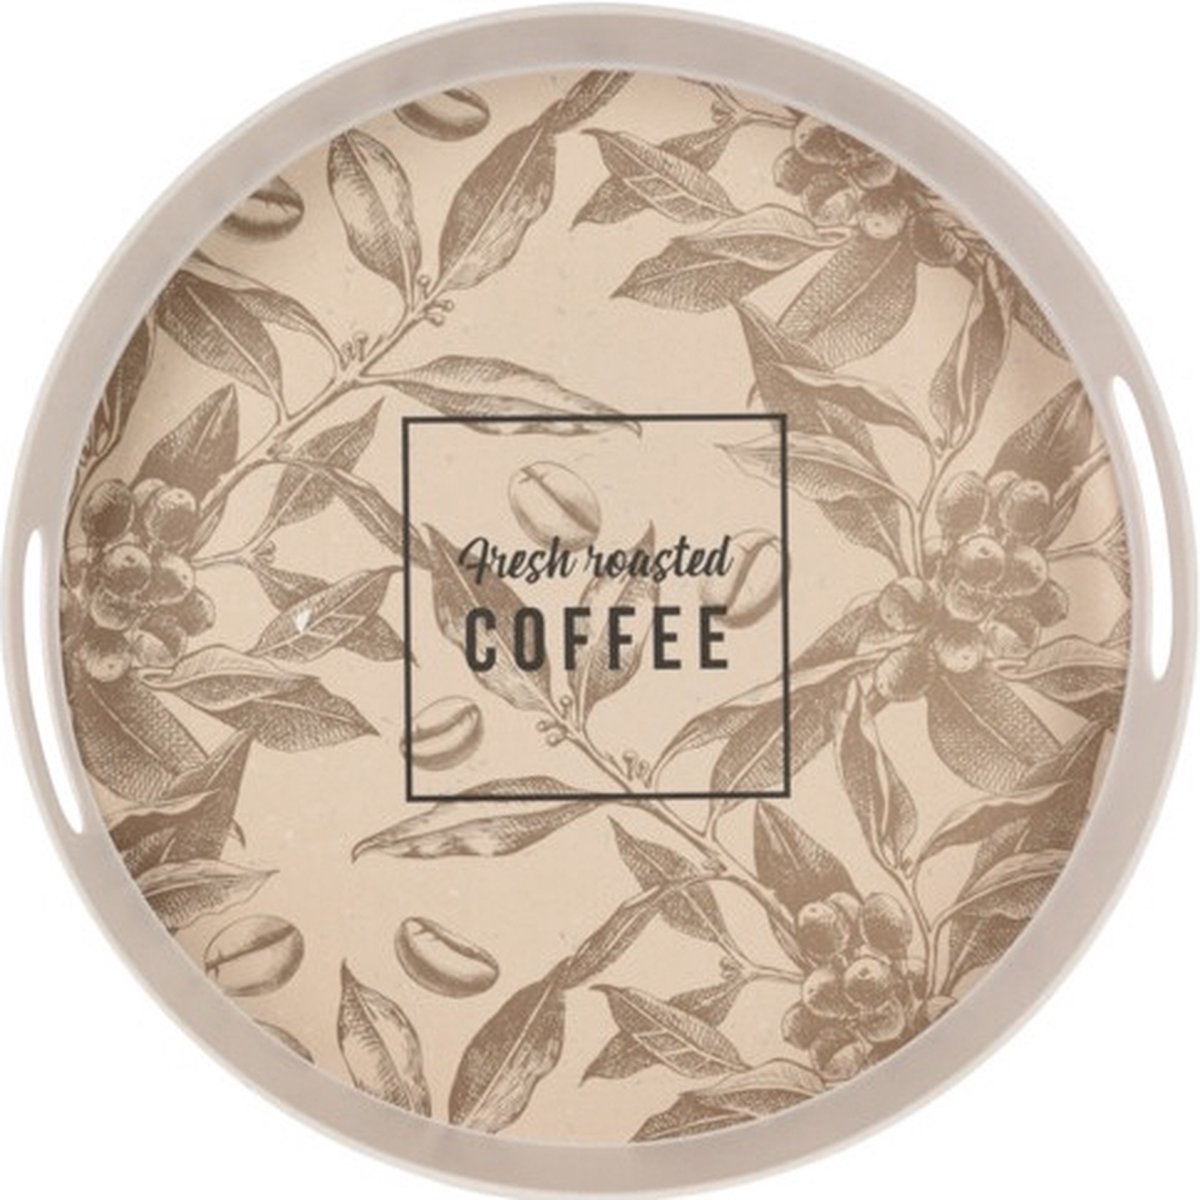 Excellent Houseware retro rond dienblad Fresh Roasted Coffee, multicolor en tekst, 31 x 31 x 4,5 cm